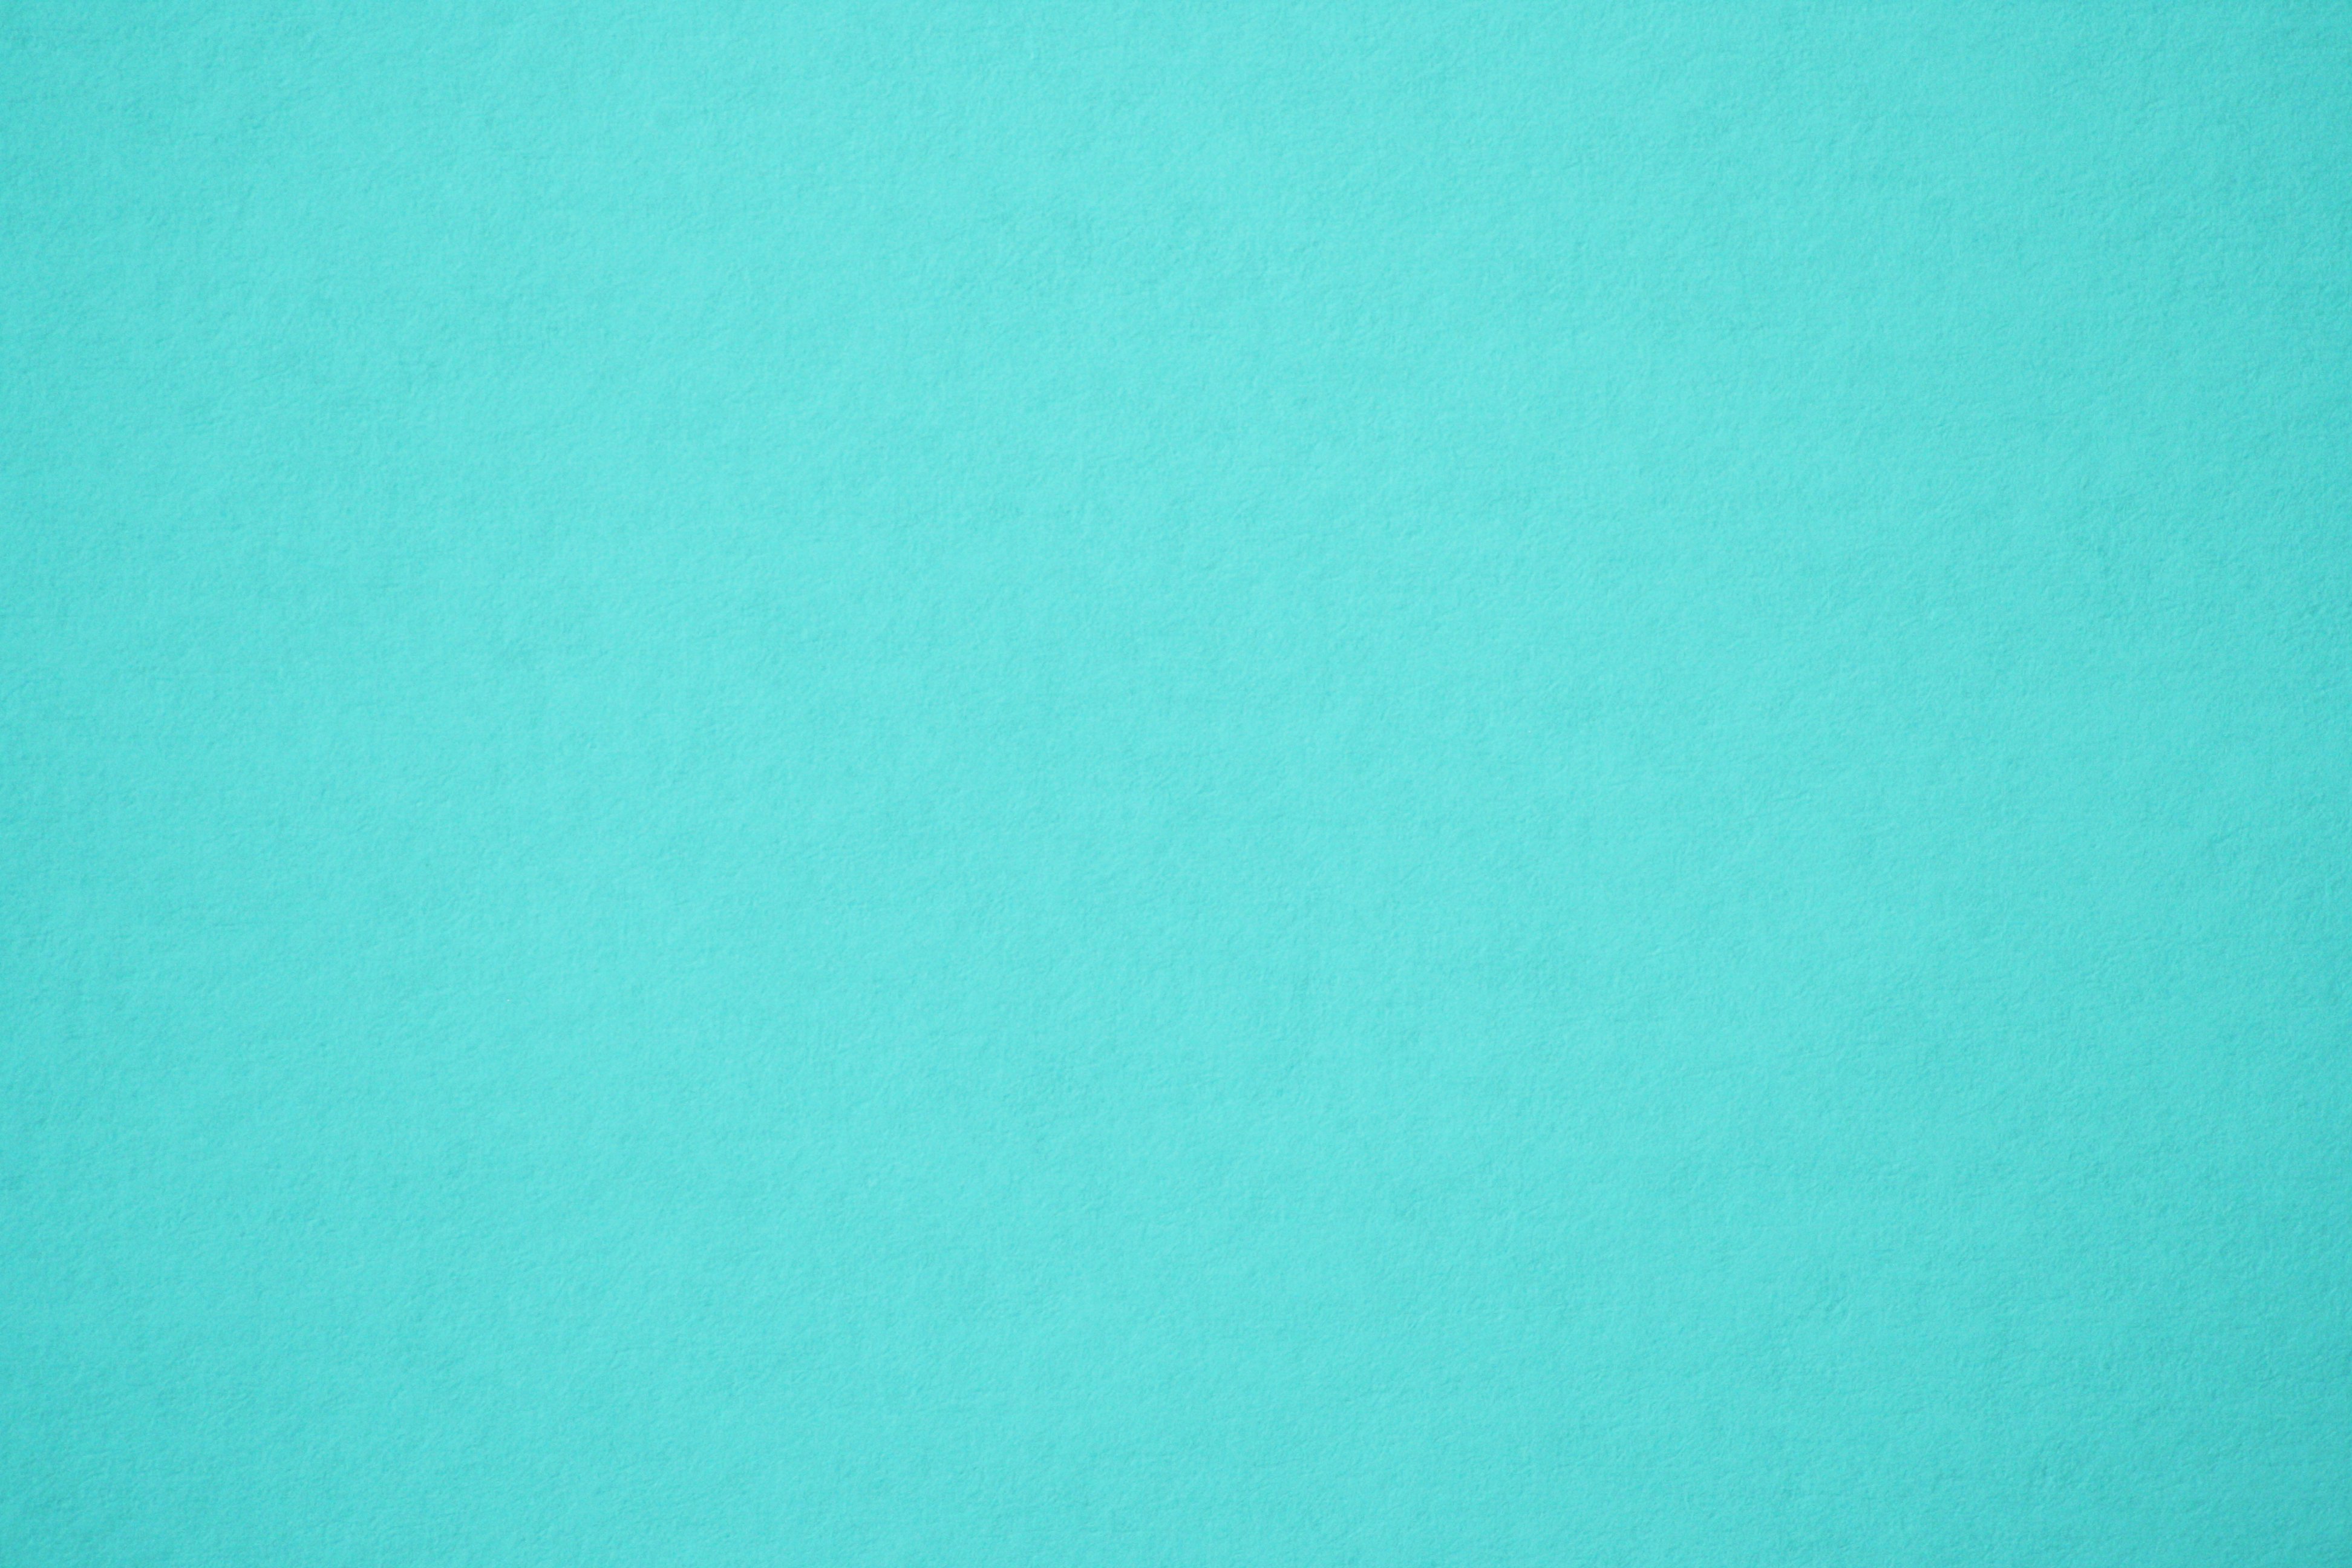 Turquoise Paper Texture Picture Photograph Photos Public